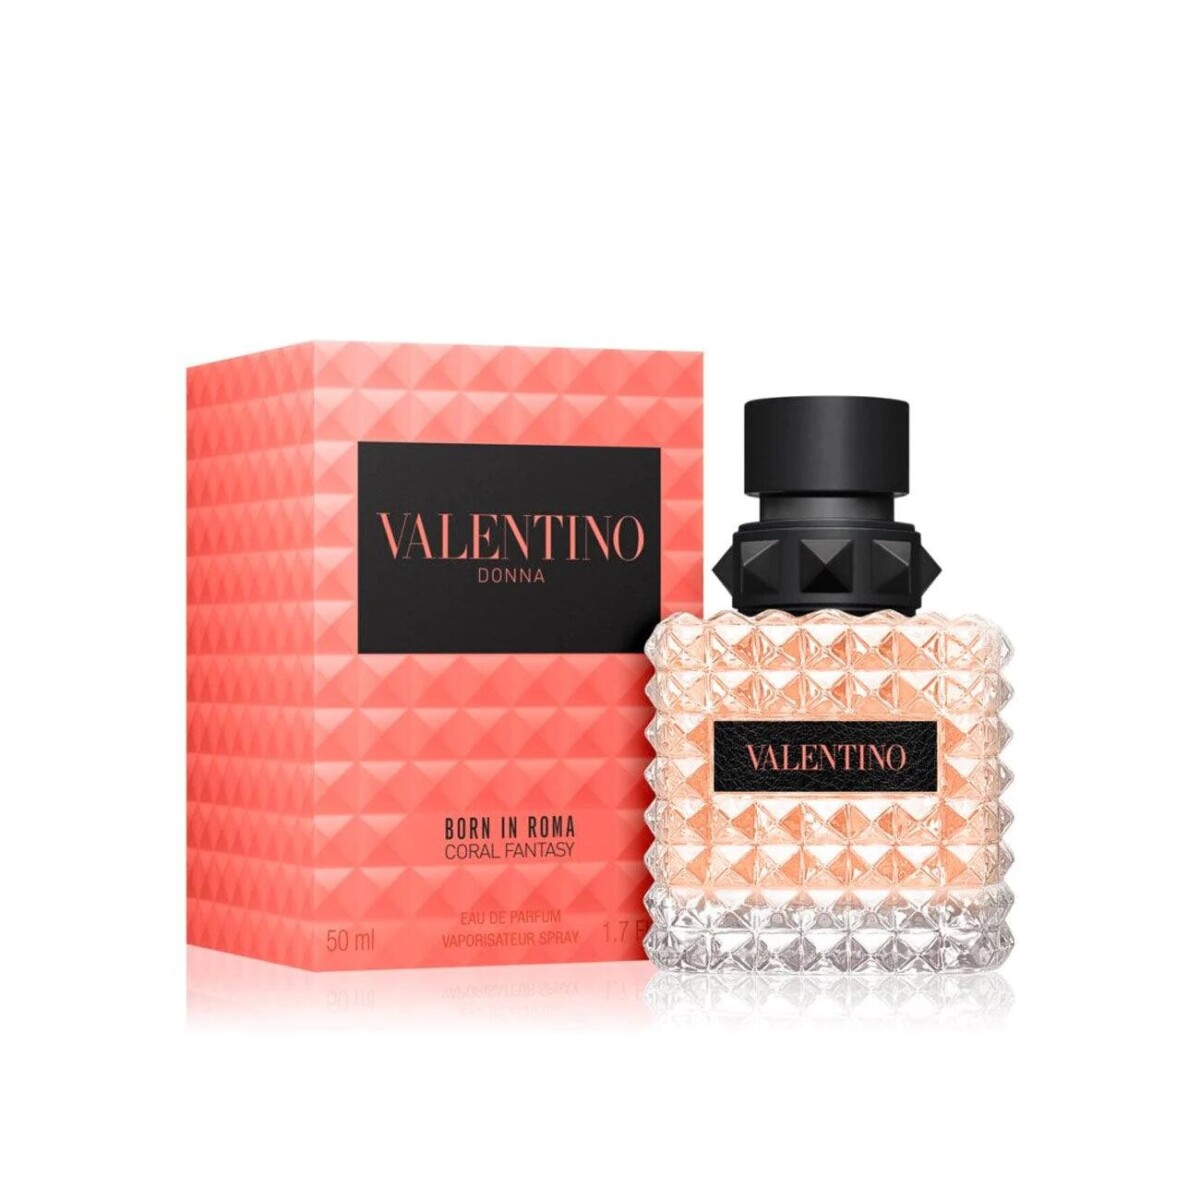 Perfume Valentino Donna Born In Roma Coral Fantasy 50 Ml - 001 